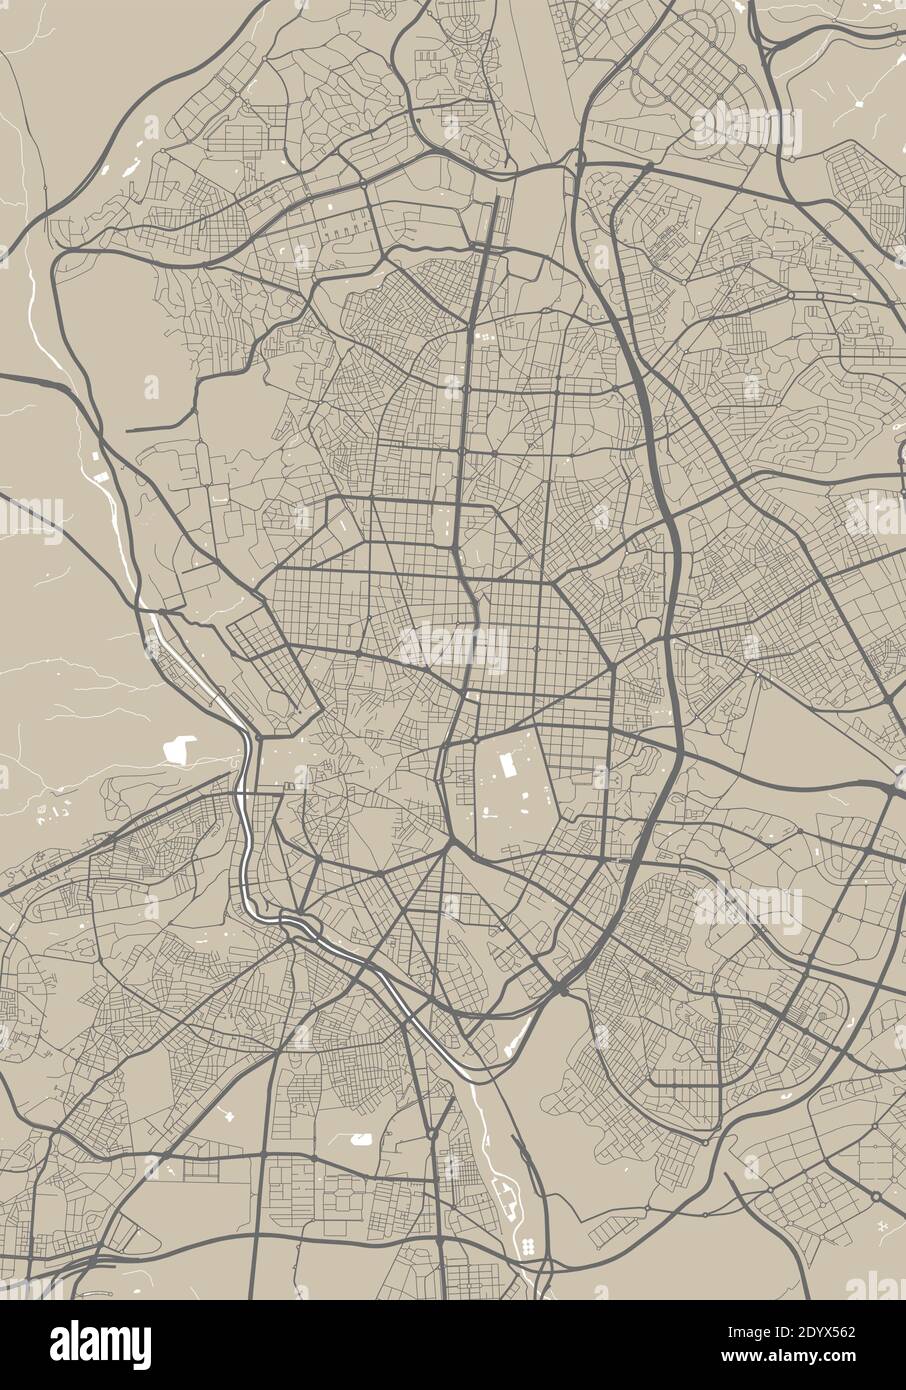 Mappa dettagliata dell'area amministrativa della città di Madrid. Illustrazione vettoriale priva di royalty. Panorama cittadino. Mappa turistica grafica decorativa del territ di Madrid Illustrazione Vettoriale